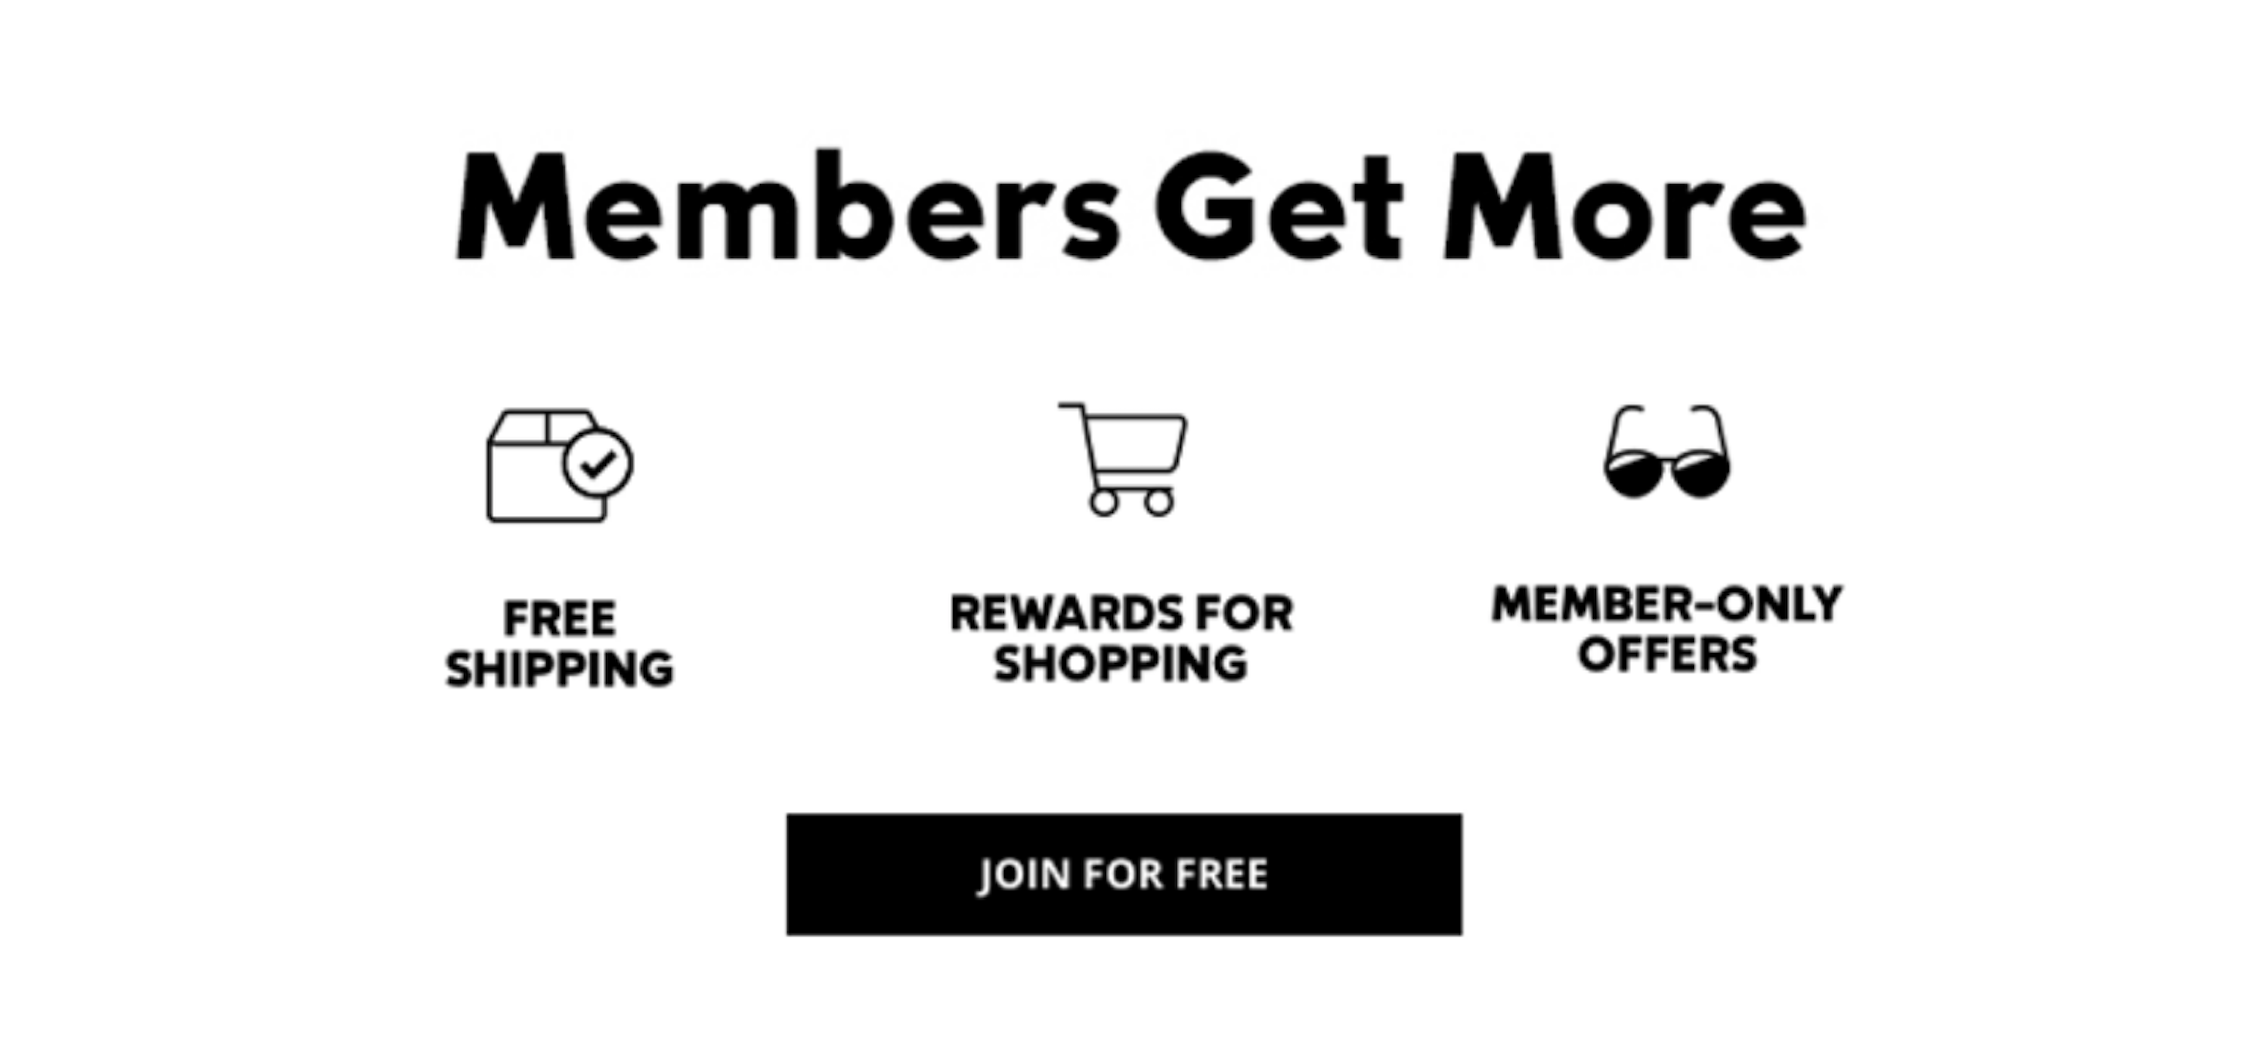 Members Get More